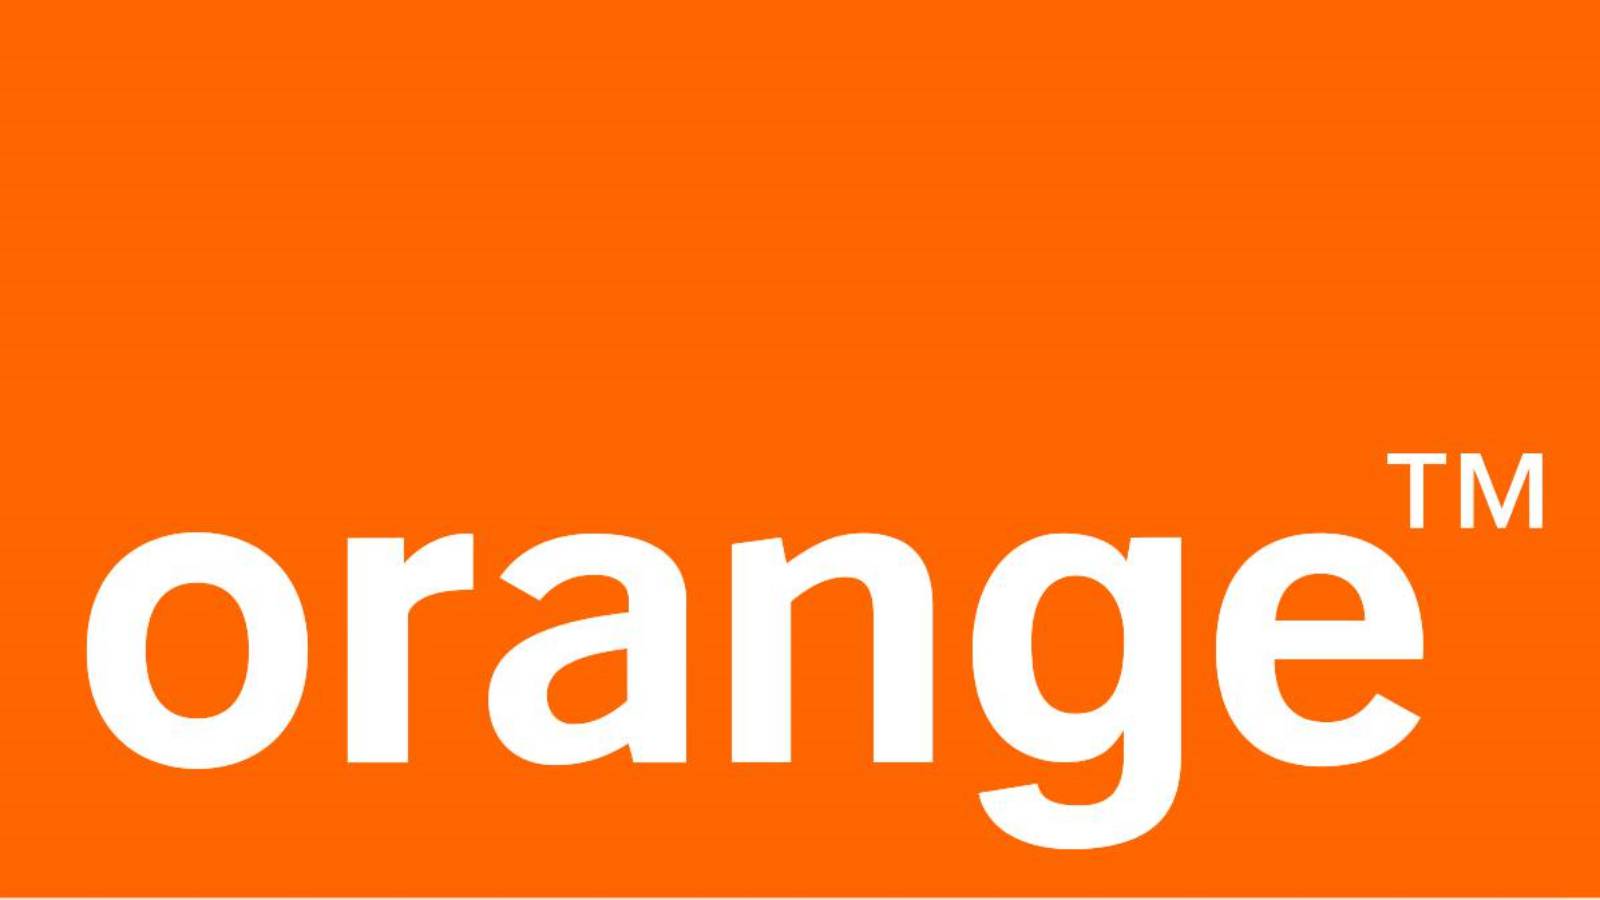 Die offiziellen Orange-Mitteilungen ATTENTION richten sich an Millionen rumänischer Kunden